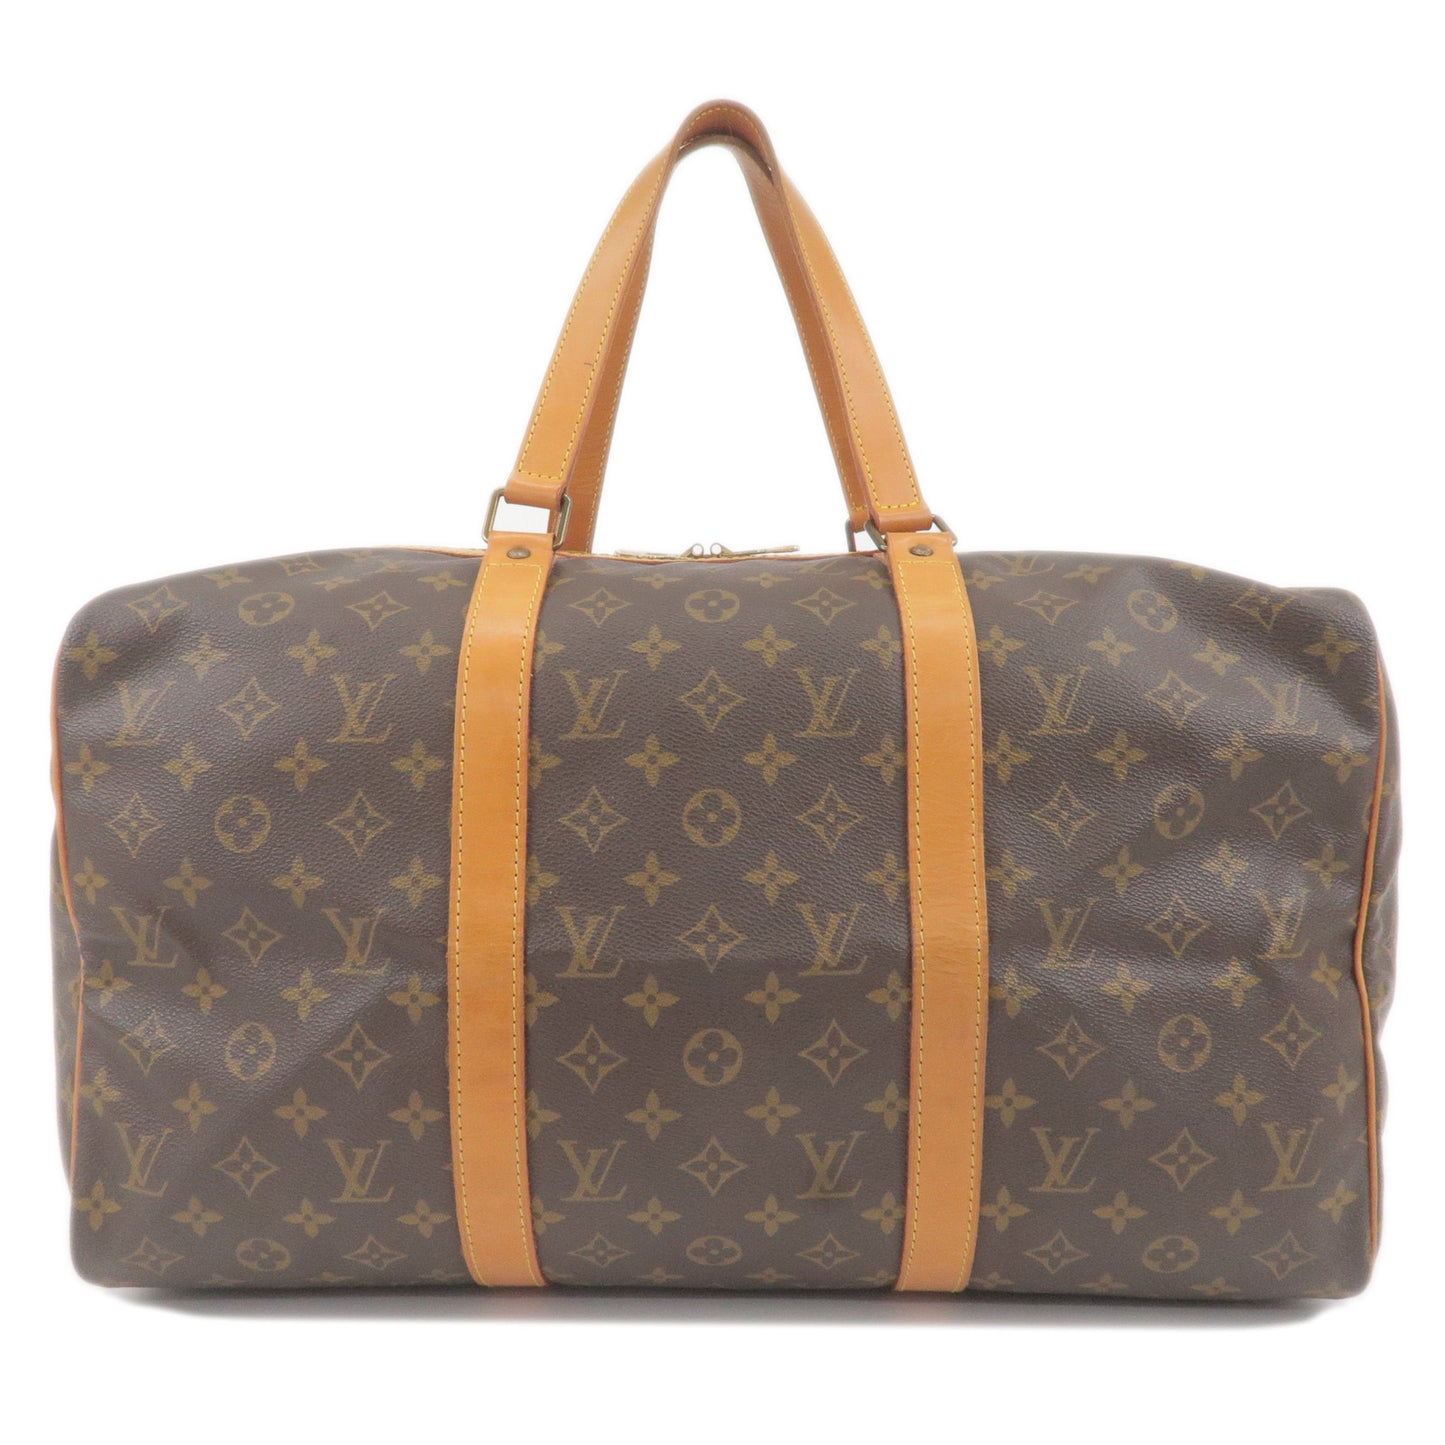 Louis-Vuitton-Monogram-Sac-Souple-45-Boston-Bag-M41624